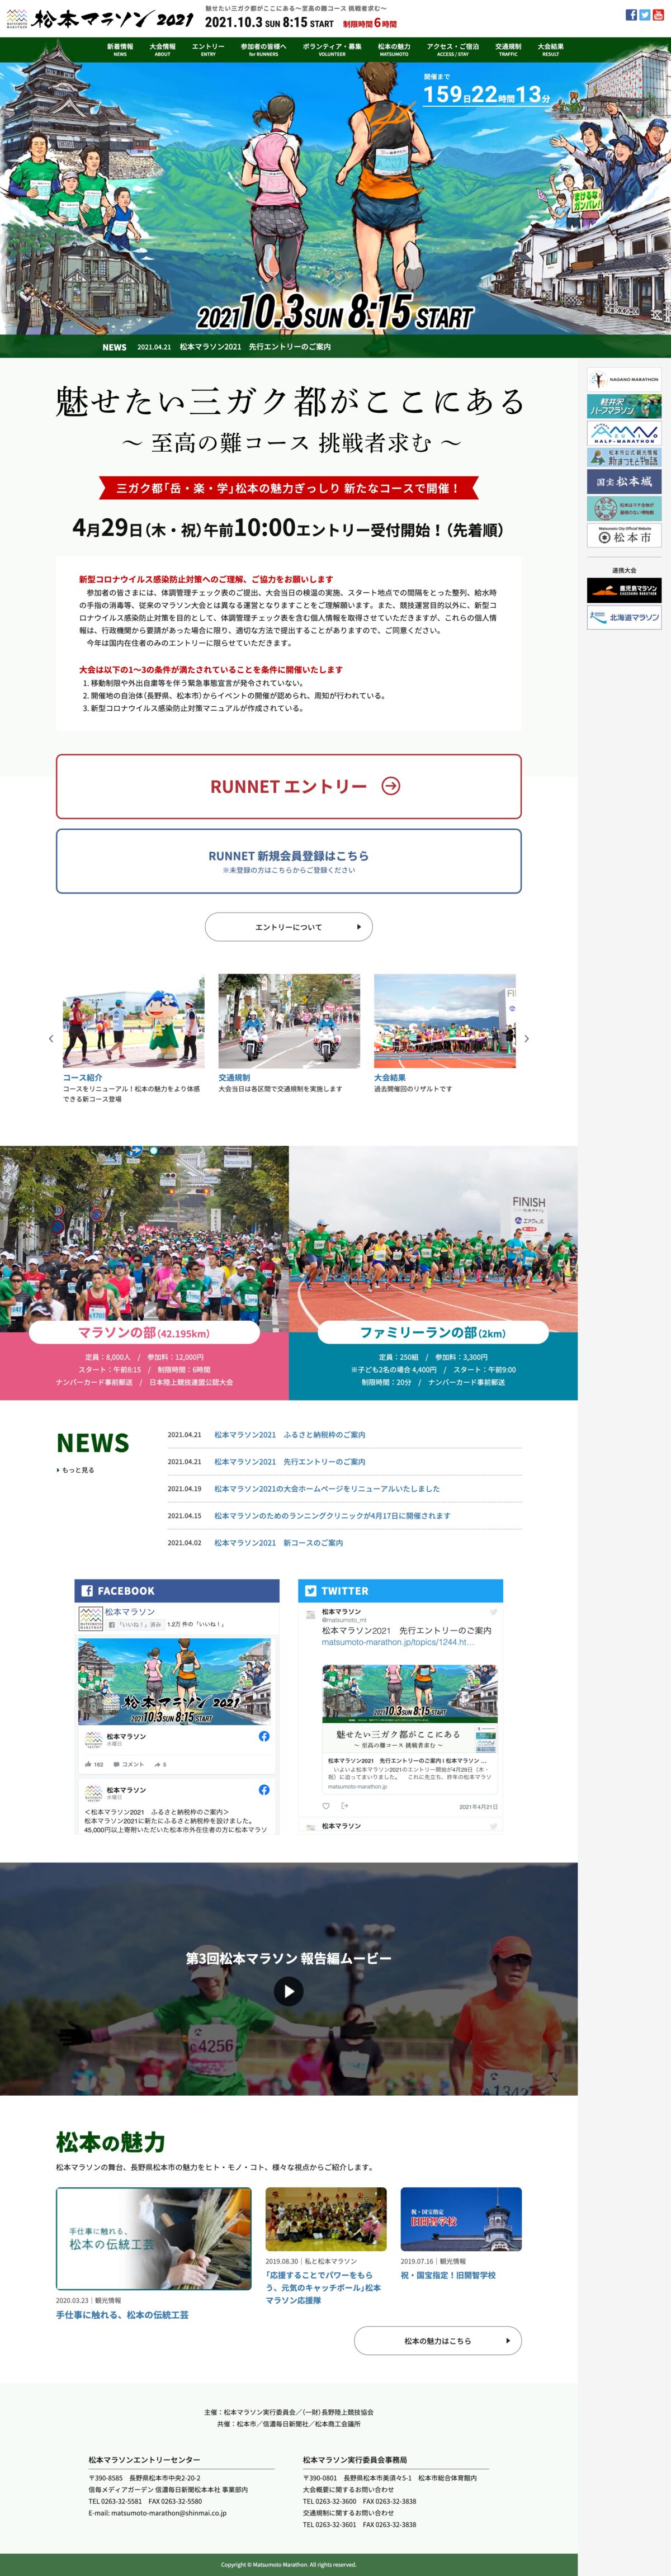 松本マラソン2021